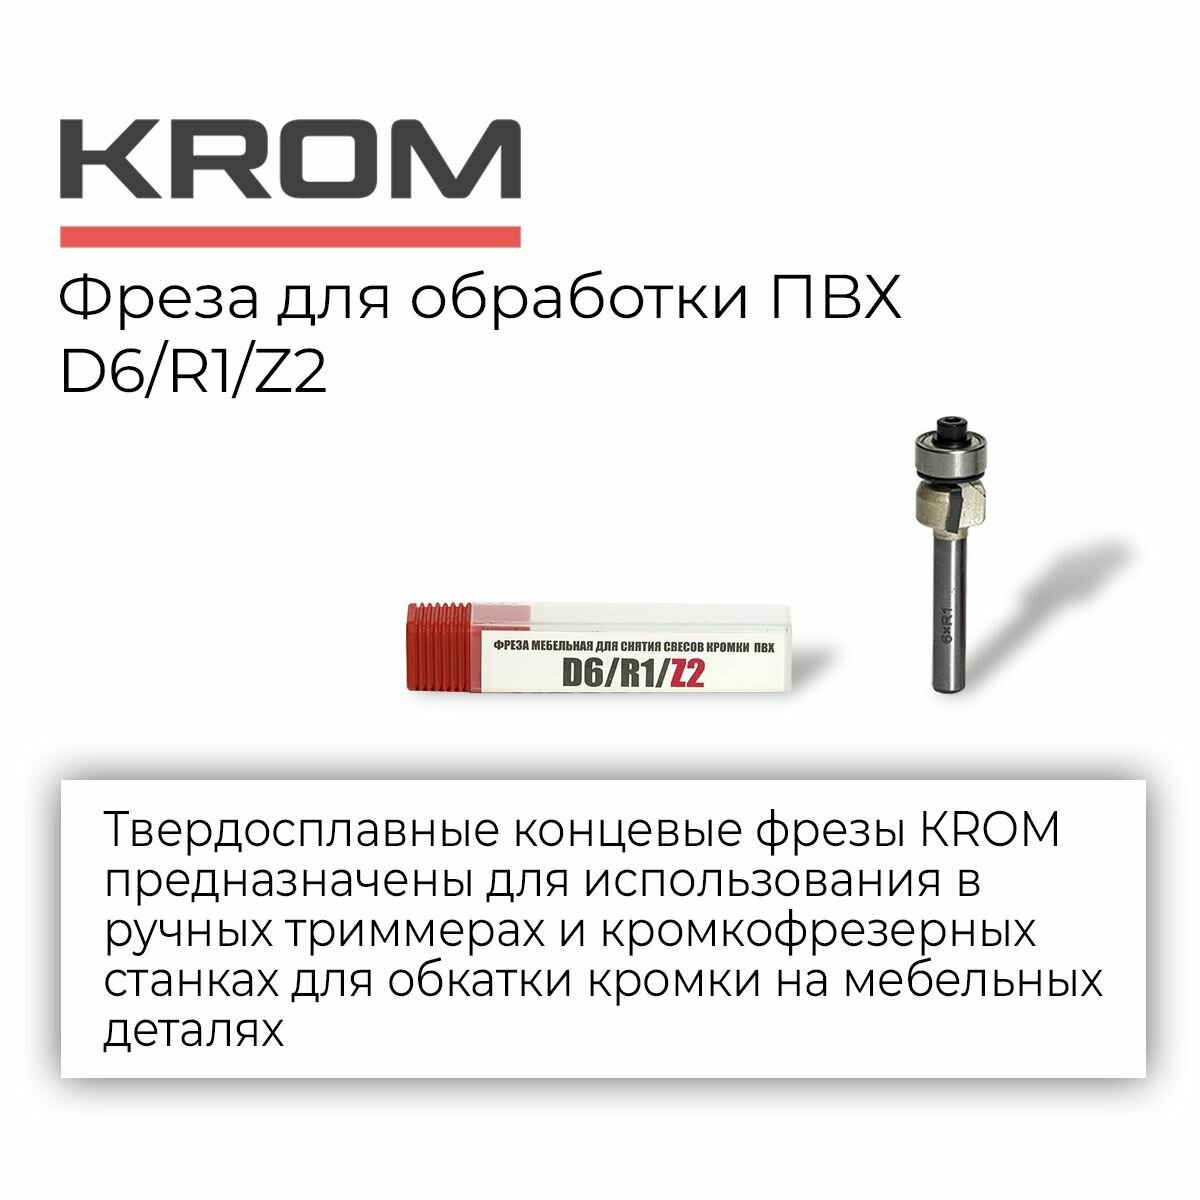 Фрезы для обработки ПВХ Krom D6/R1/Z2